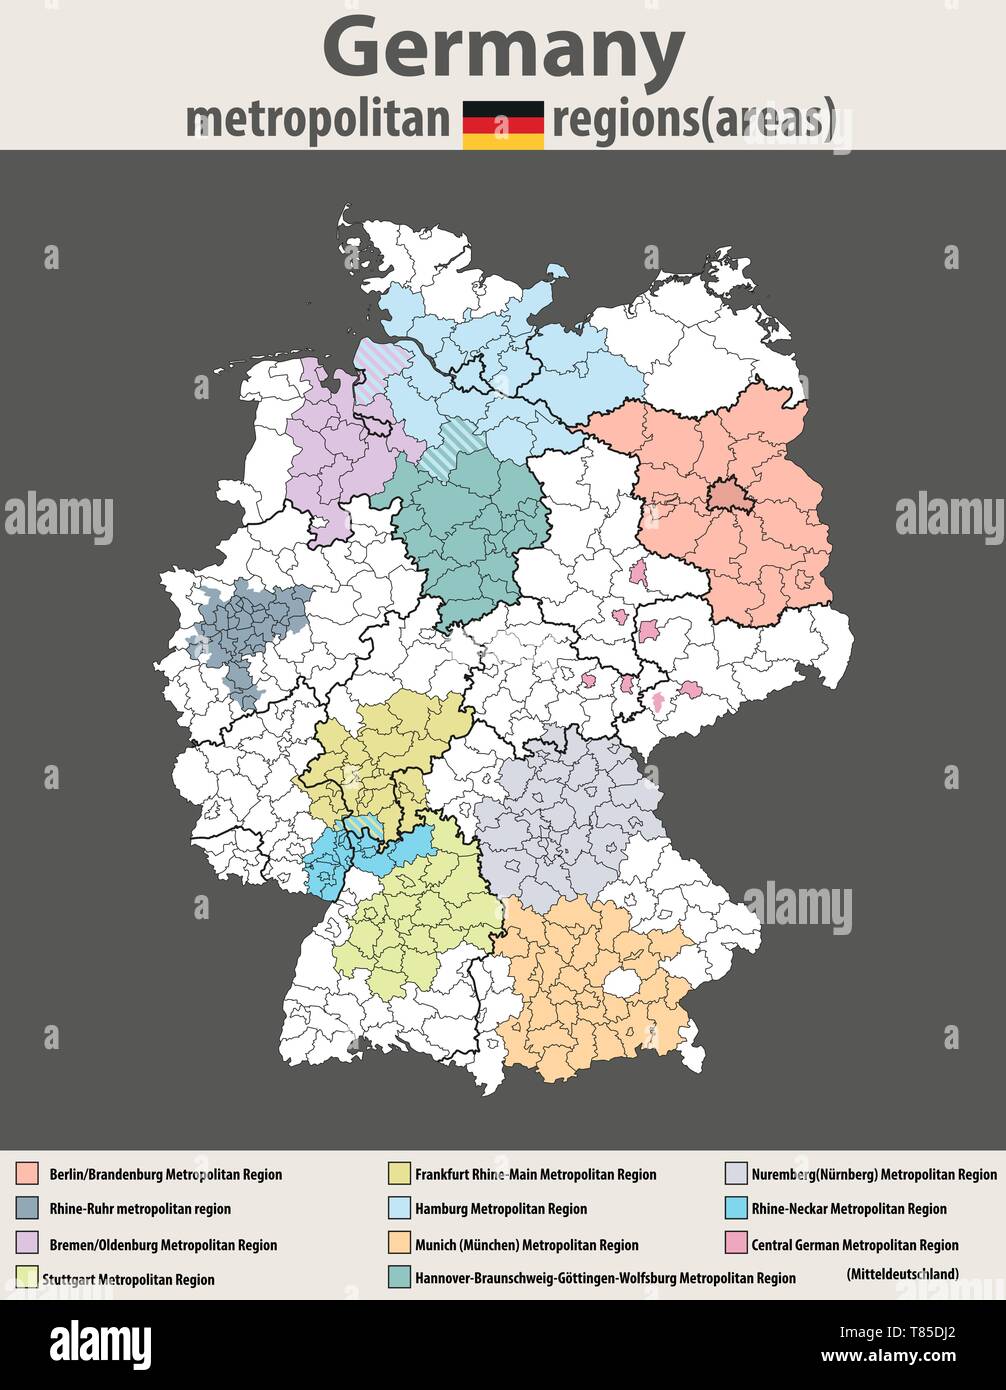 Il vettore ad alta mappa dettagliata di Germania regioni metropolitane (aree) Illustrazione Vettoriale